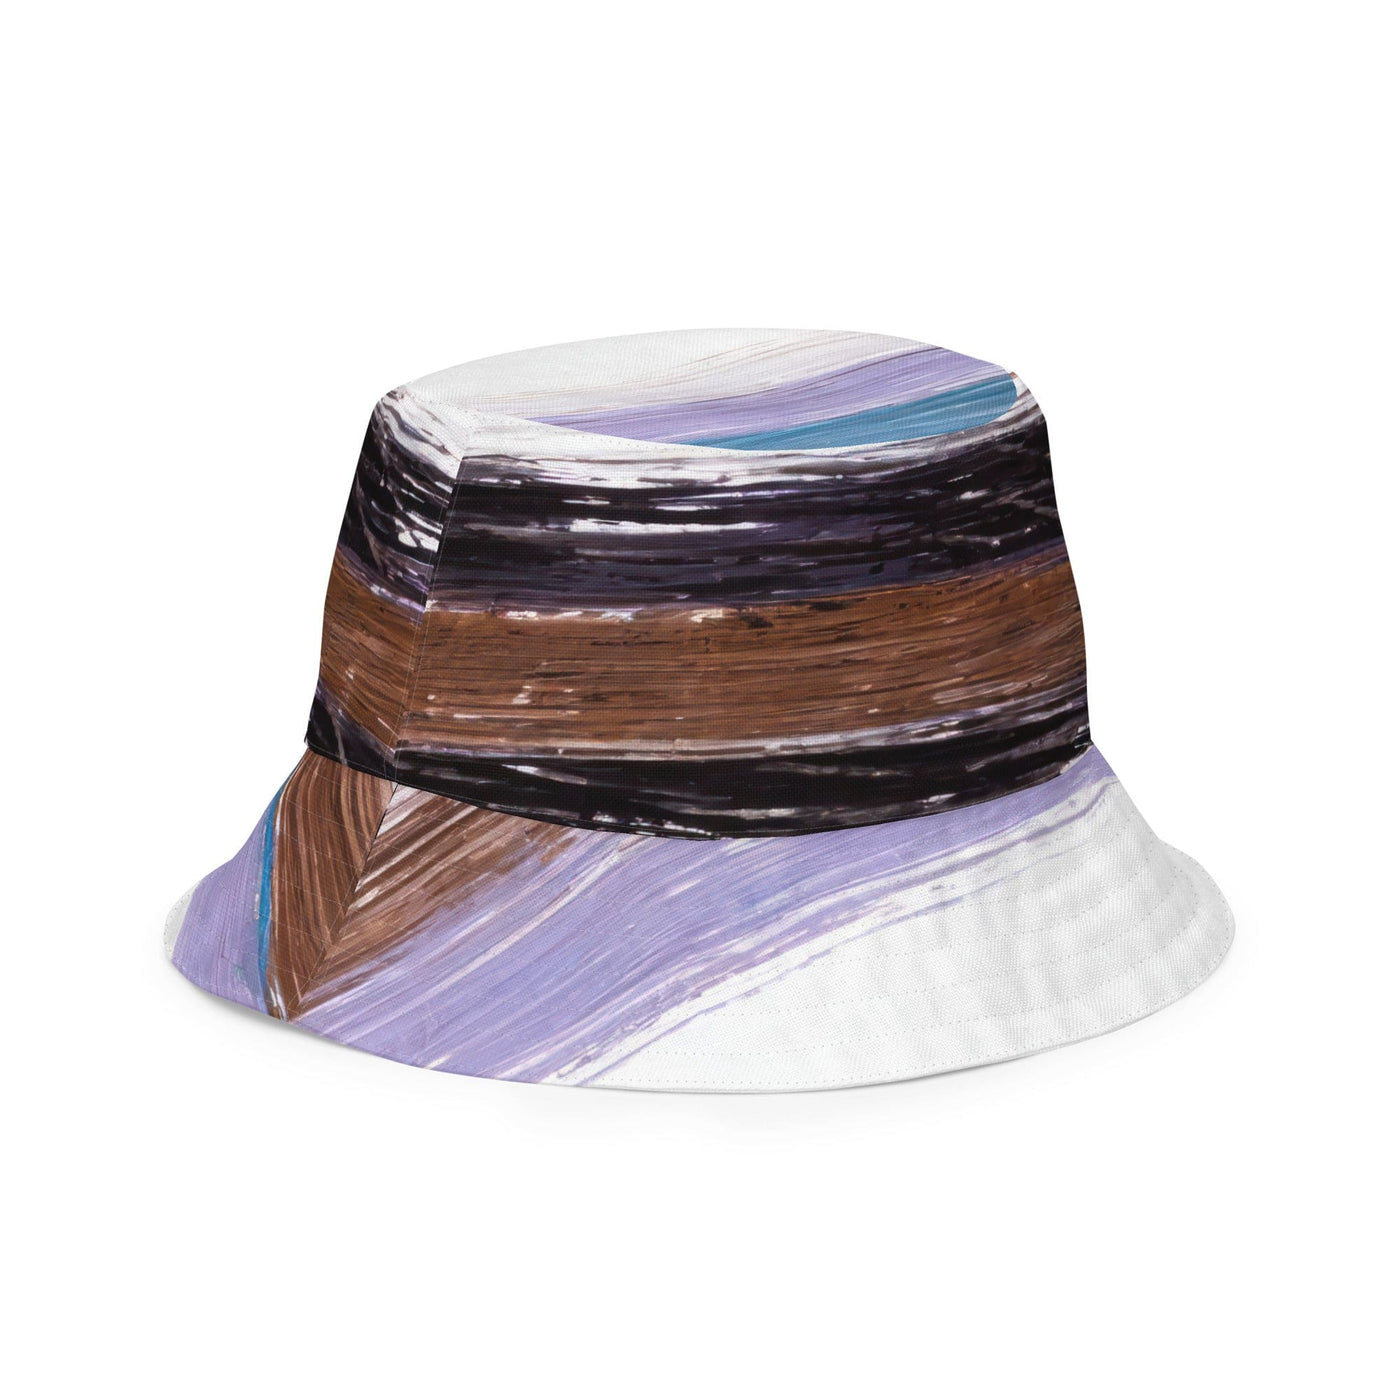 Reversible Bucket Hat Lavender Black Brown Rustic Pattern